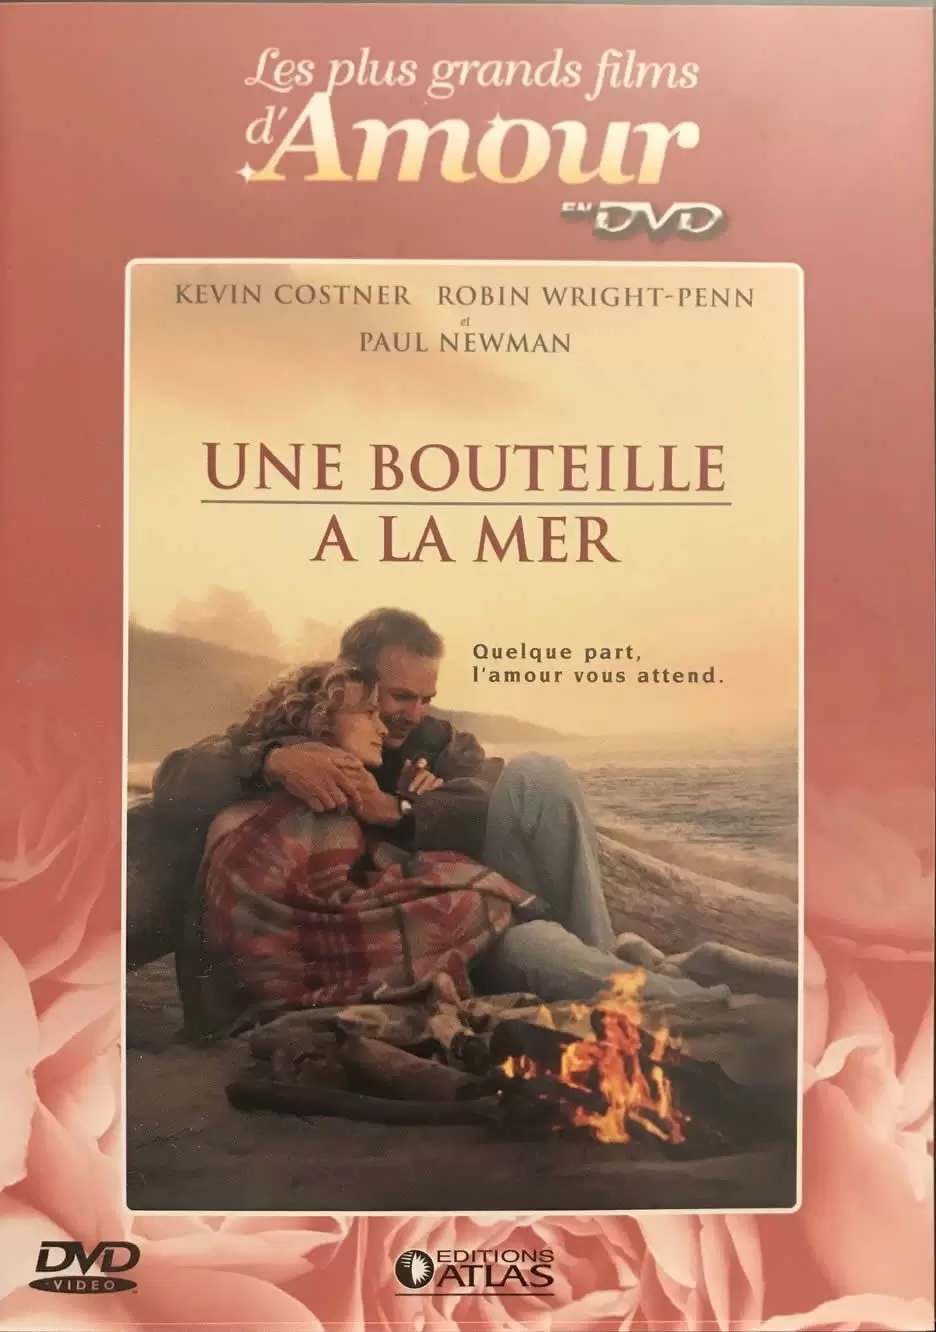 Les plus grands films d\'amour en DVD - Une bouteille à la mer